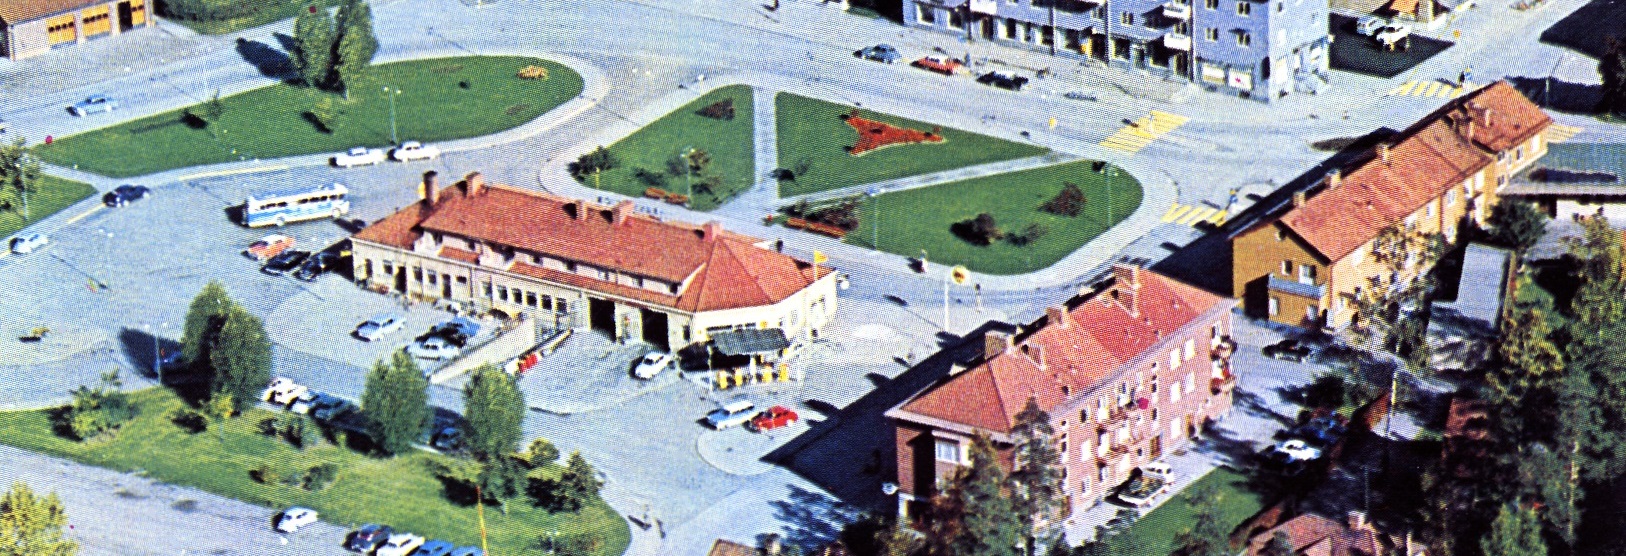 En Shellstation fanns i det sydvästra hörnet med en smörjhall och en tvätthall, ca 1962